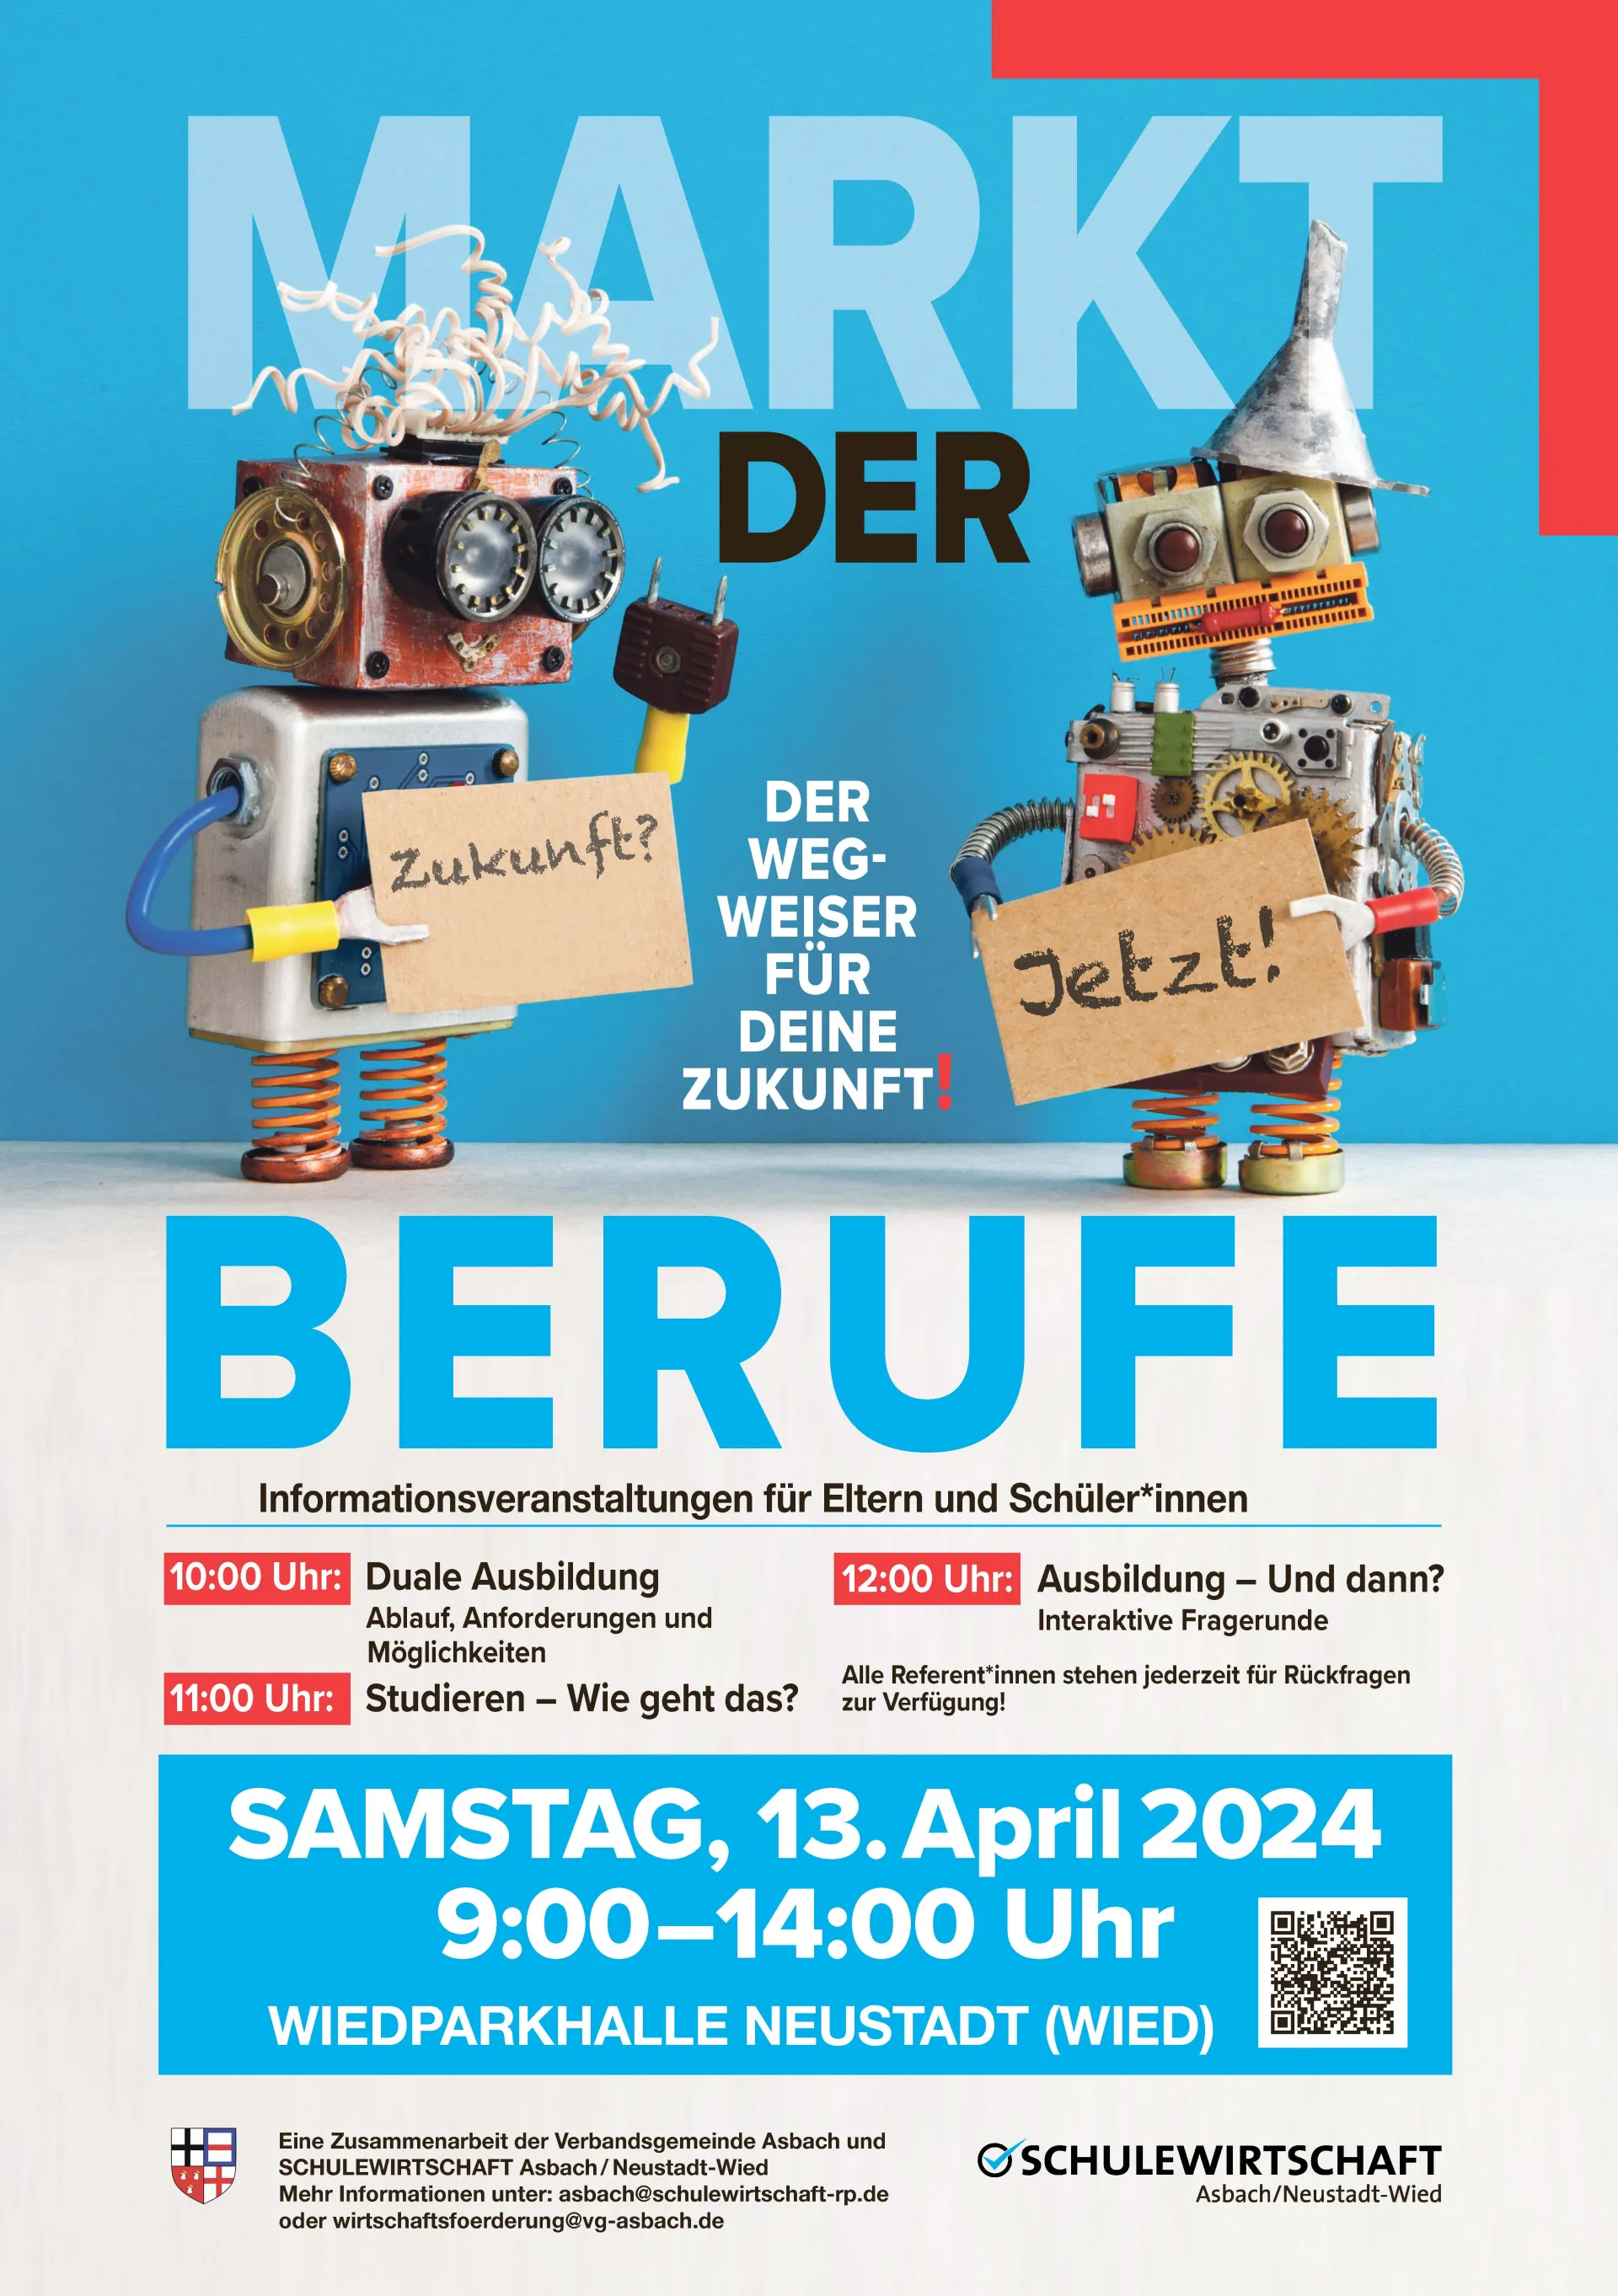 Auf dem Plakat stehen die relevanten Informationen zum Markt der Berufe am 13. April in Neustadt an der Wied